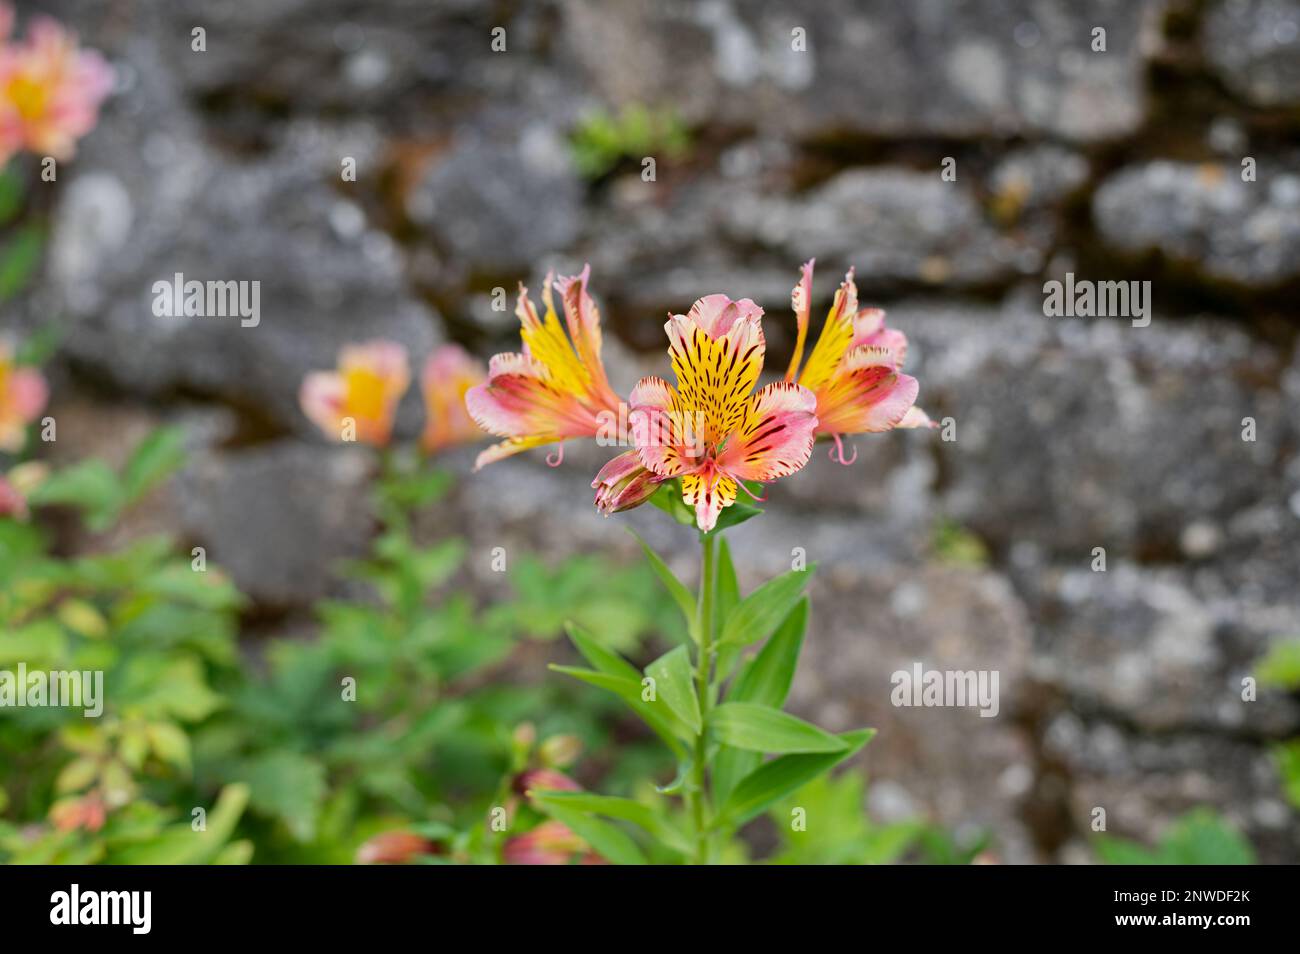 Belles fleurs de lys des incas aux couleurs vives, mur en pierre en arrière-plan Stock Photo